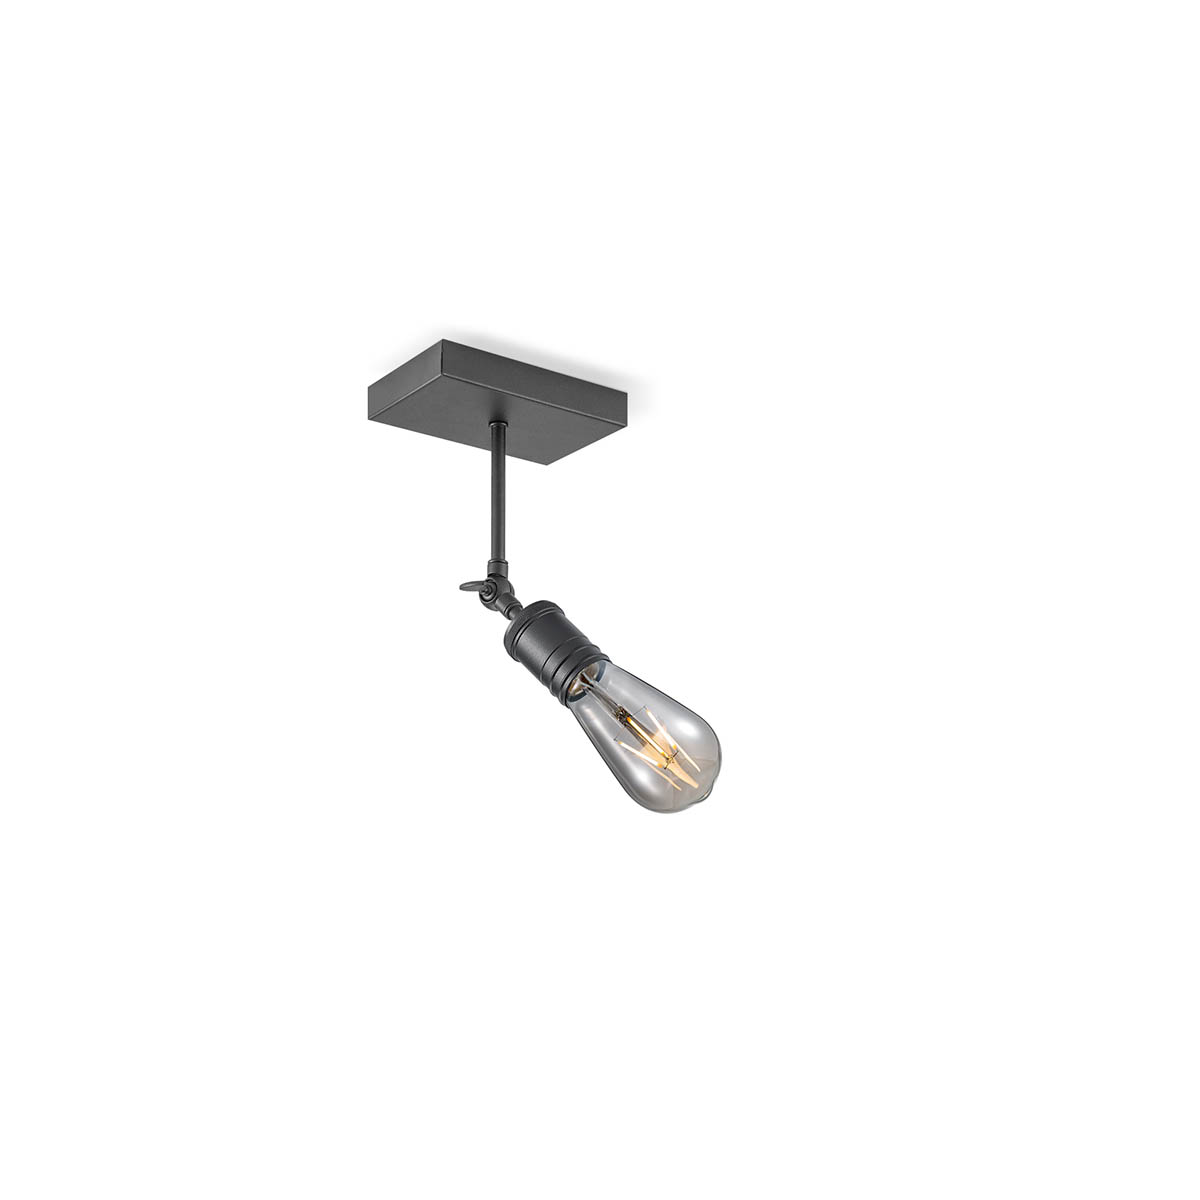 Tangla lighting - TLS6016-01SB - Spotlight 1 Light - metal - sand black - Spot - E27